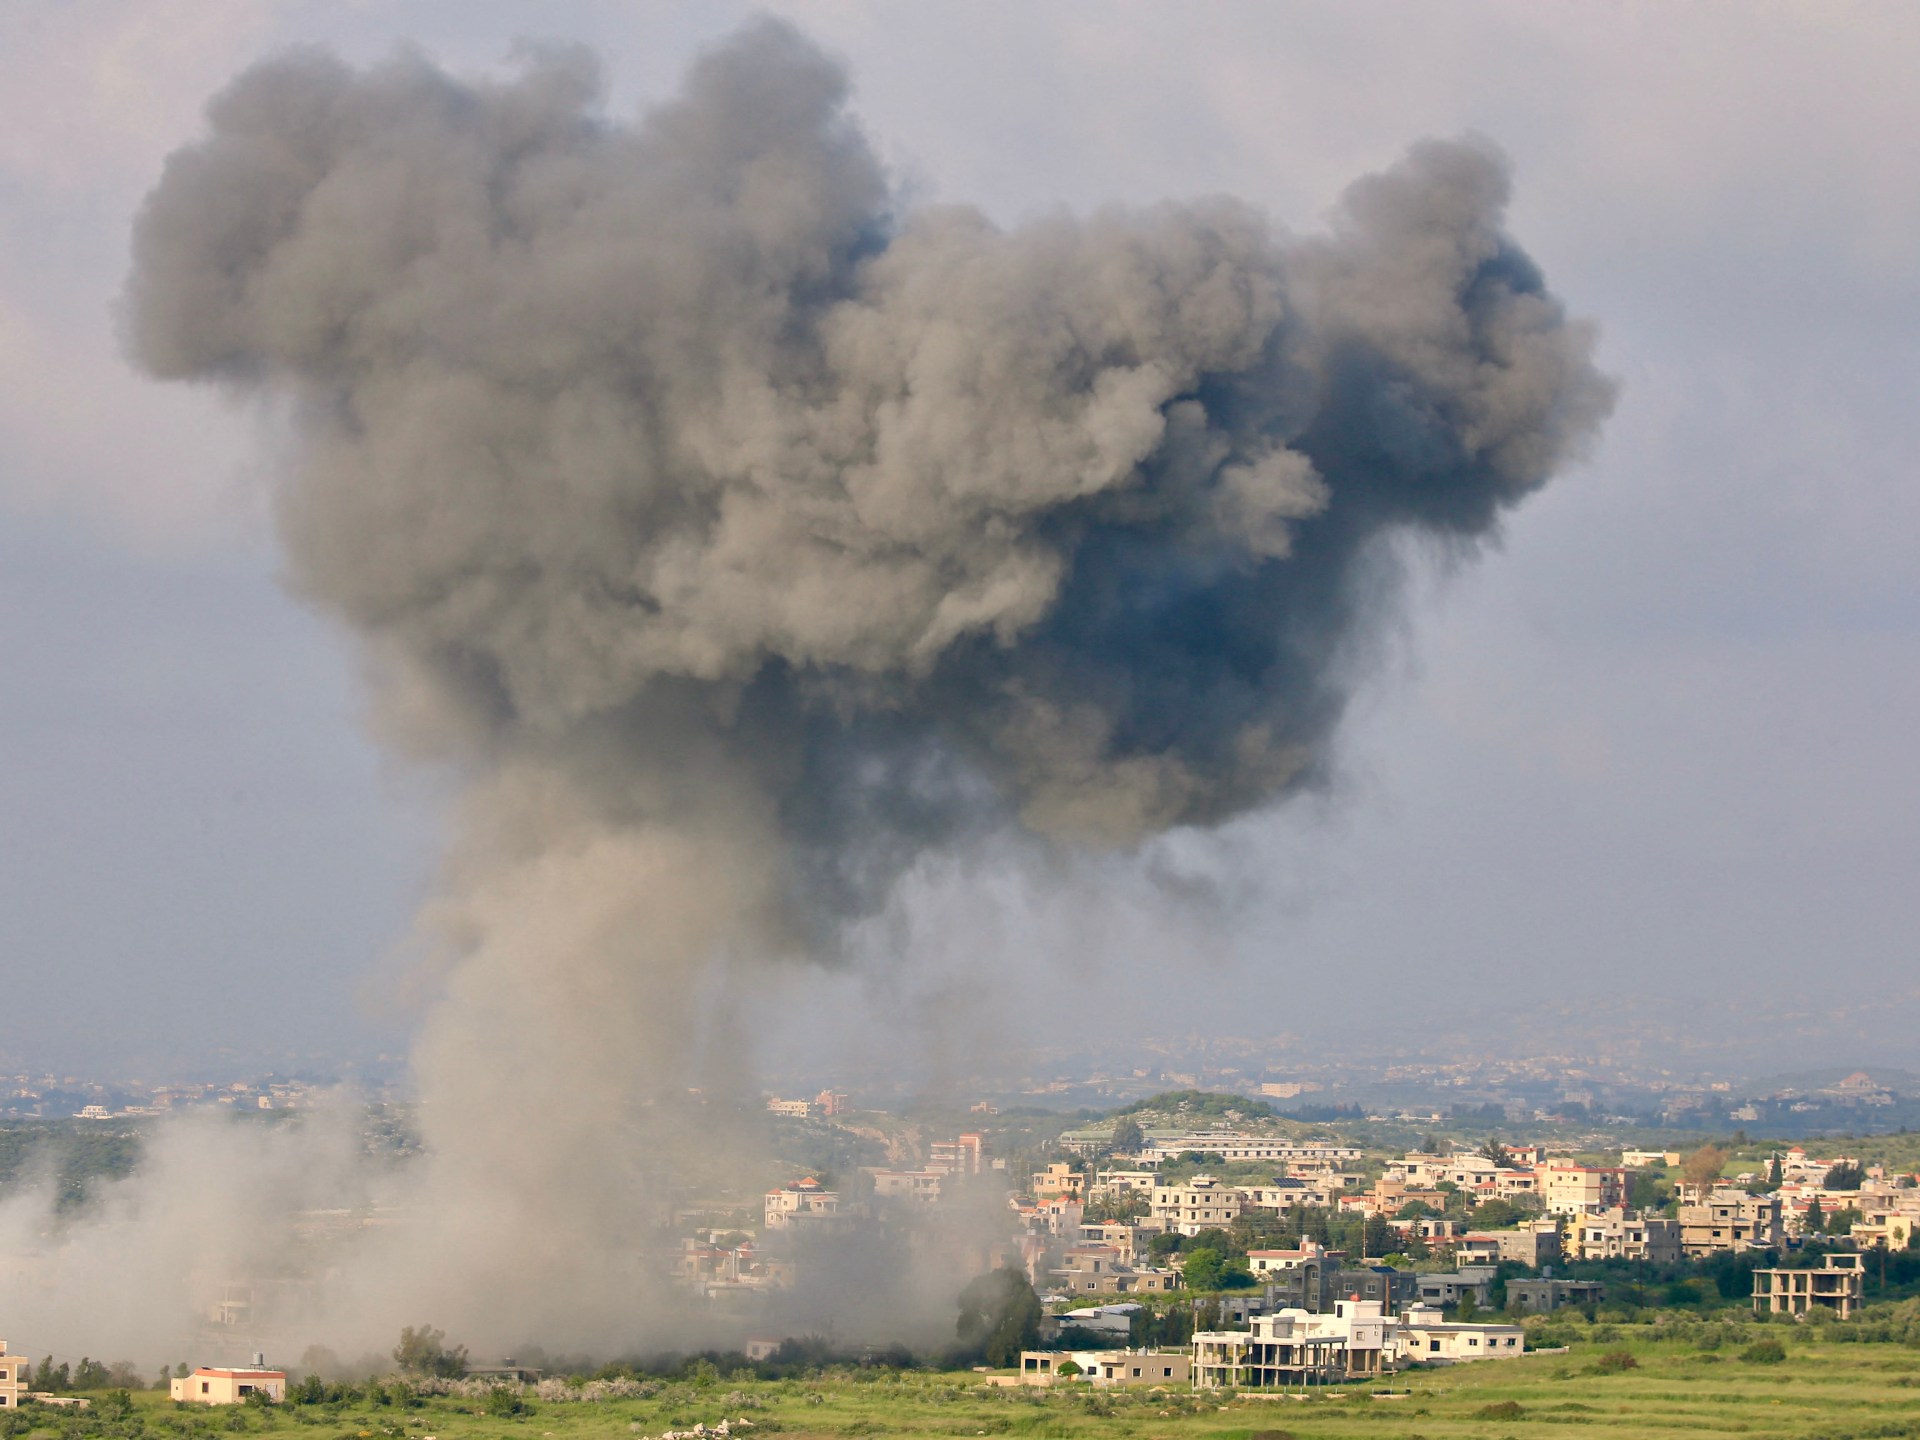 بعد إصابة قوة إسرائيلية متسللة.. الاحتلال يقصف مبنى لحزب الله | أخبار – البوكس نيوز